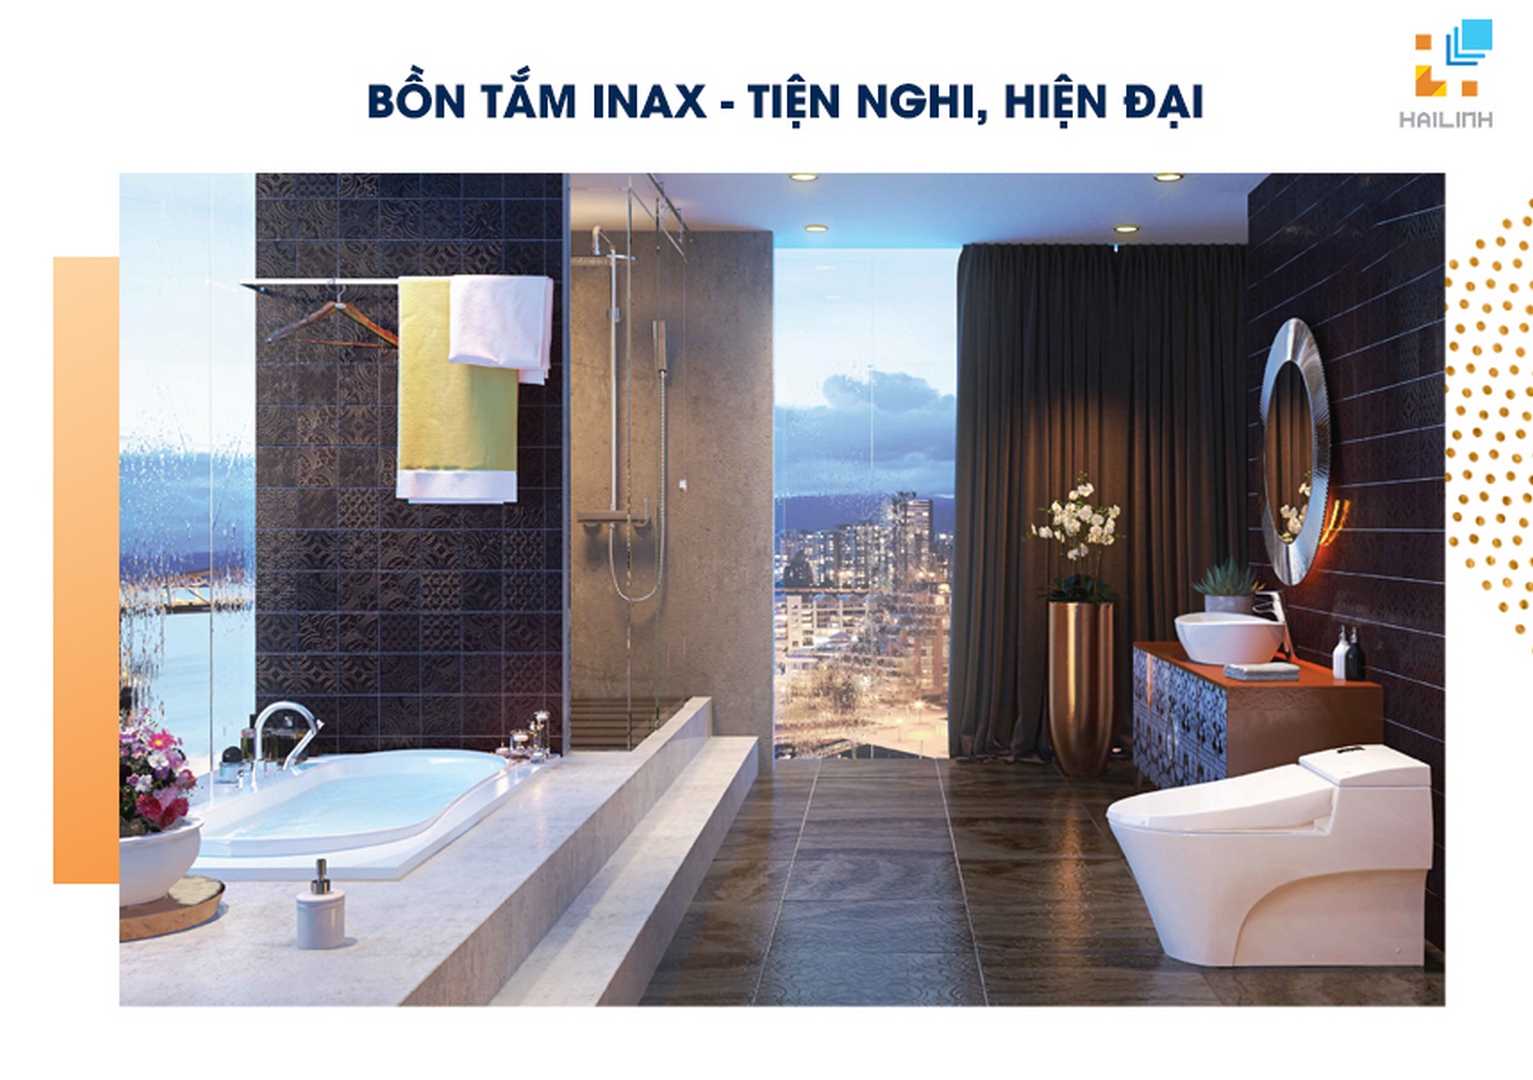 Sử dụng bồn tắm INAX - kiến tạo không gian tiện nghi, hiện đại